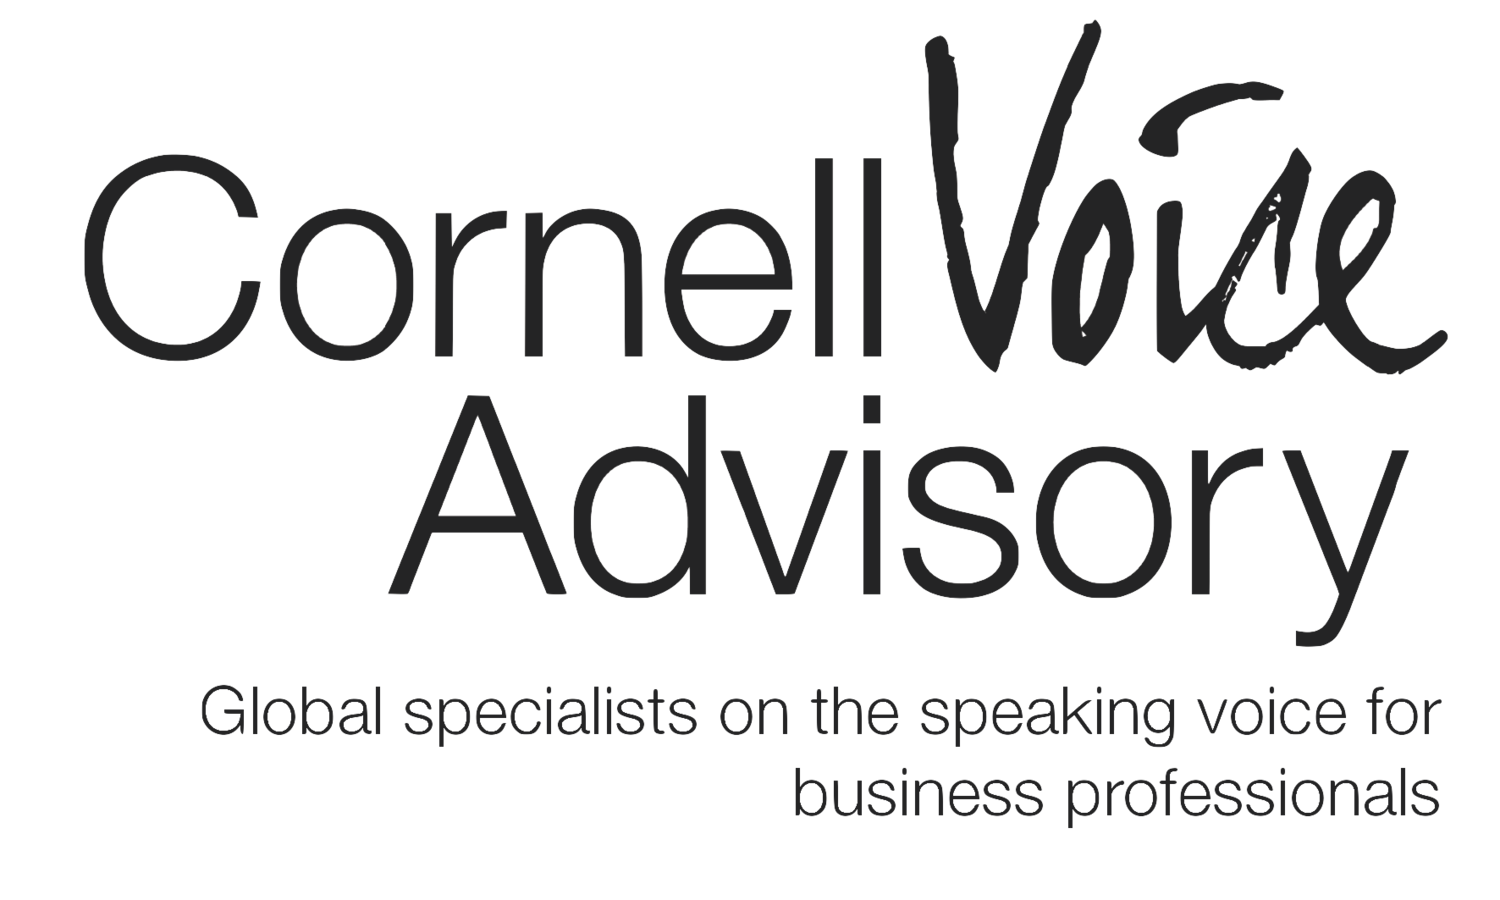 Cornell Voice Advisory